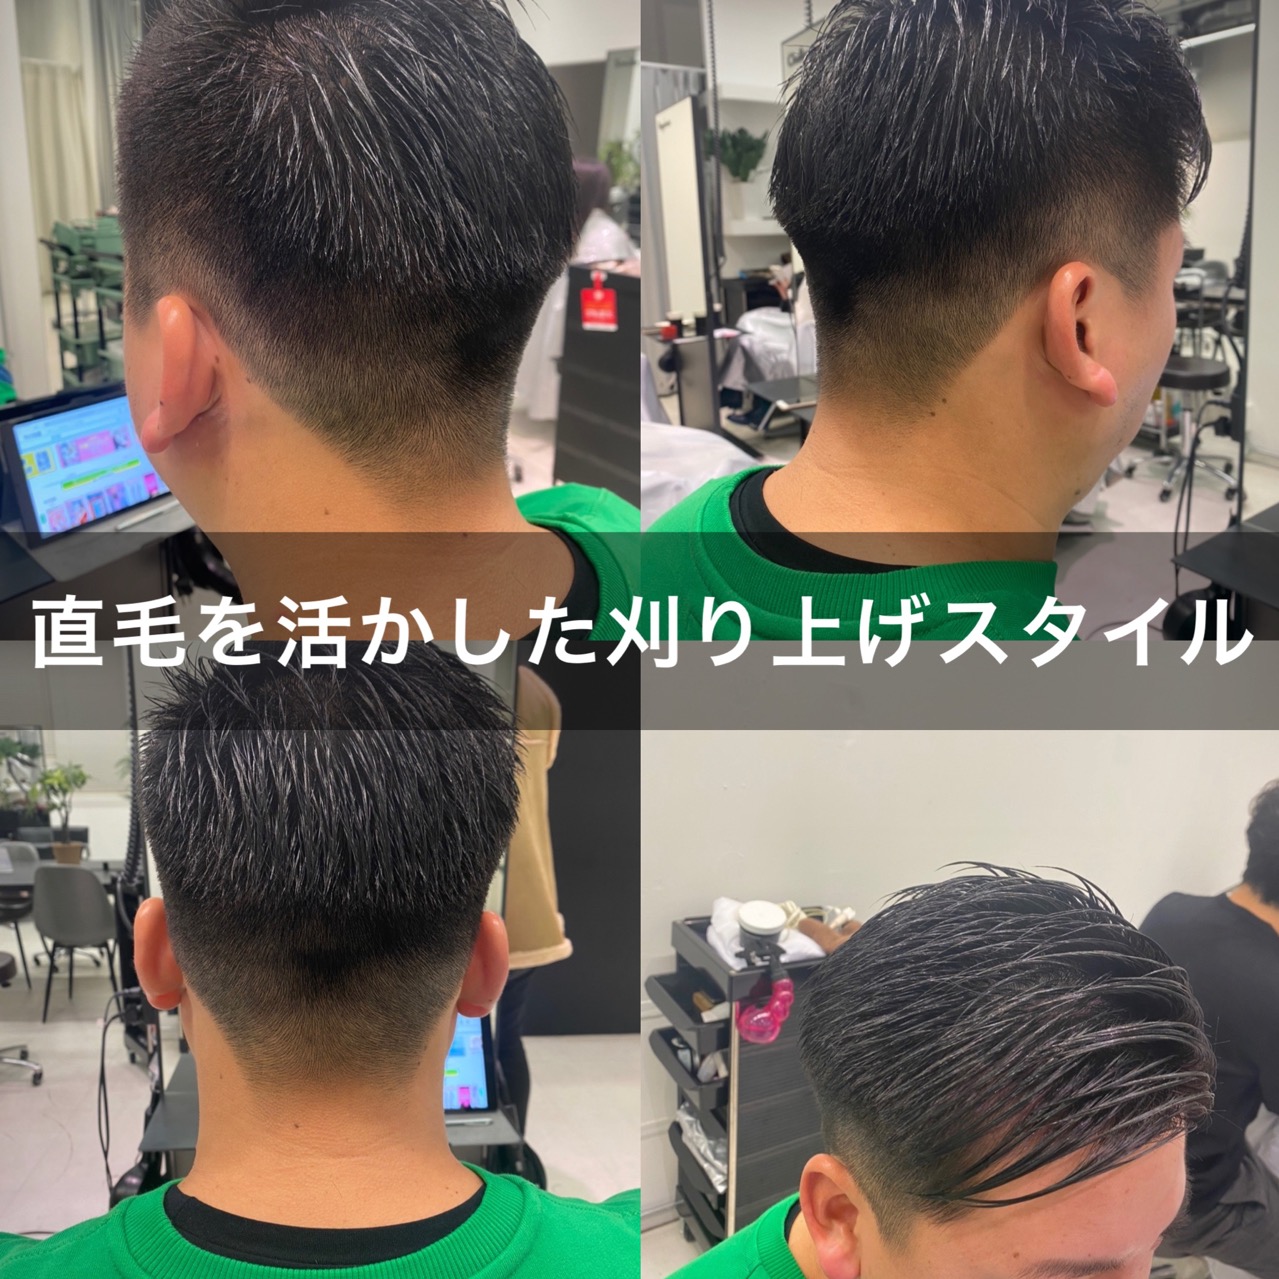 直毛のメンズにお勧めスタイル 髪質を活かしたシャープな刈り上げ Ryohei Kato